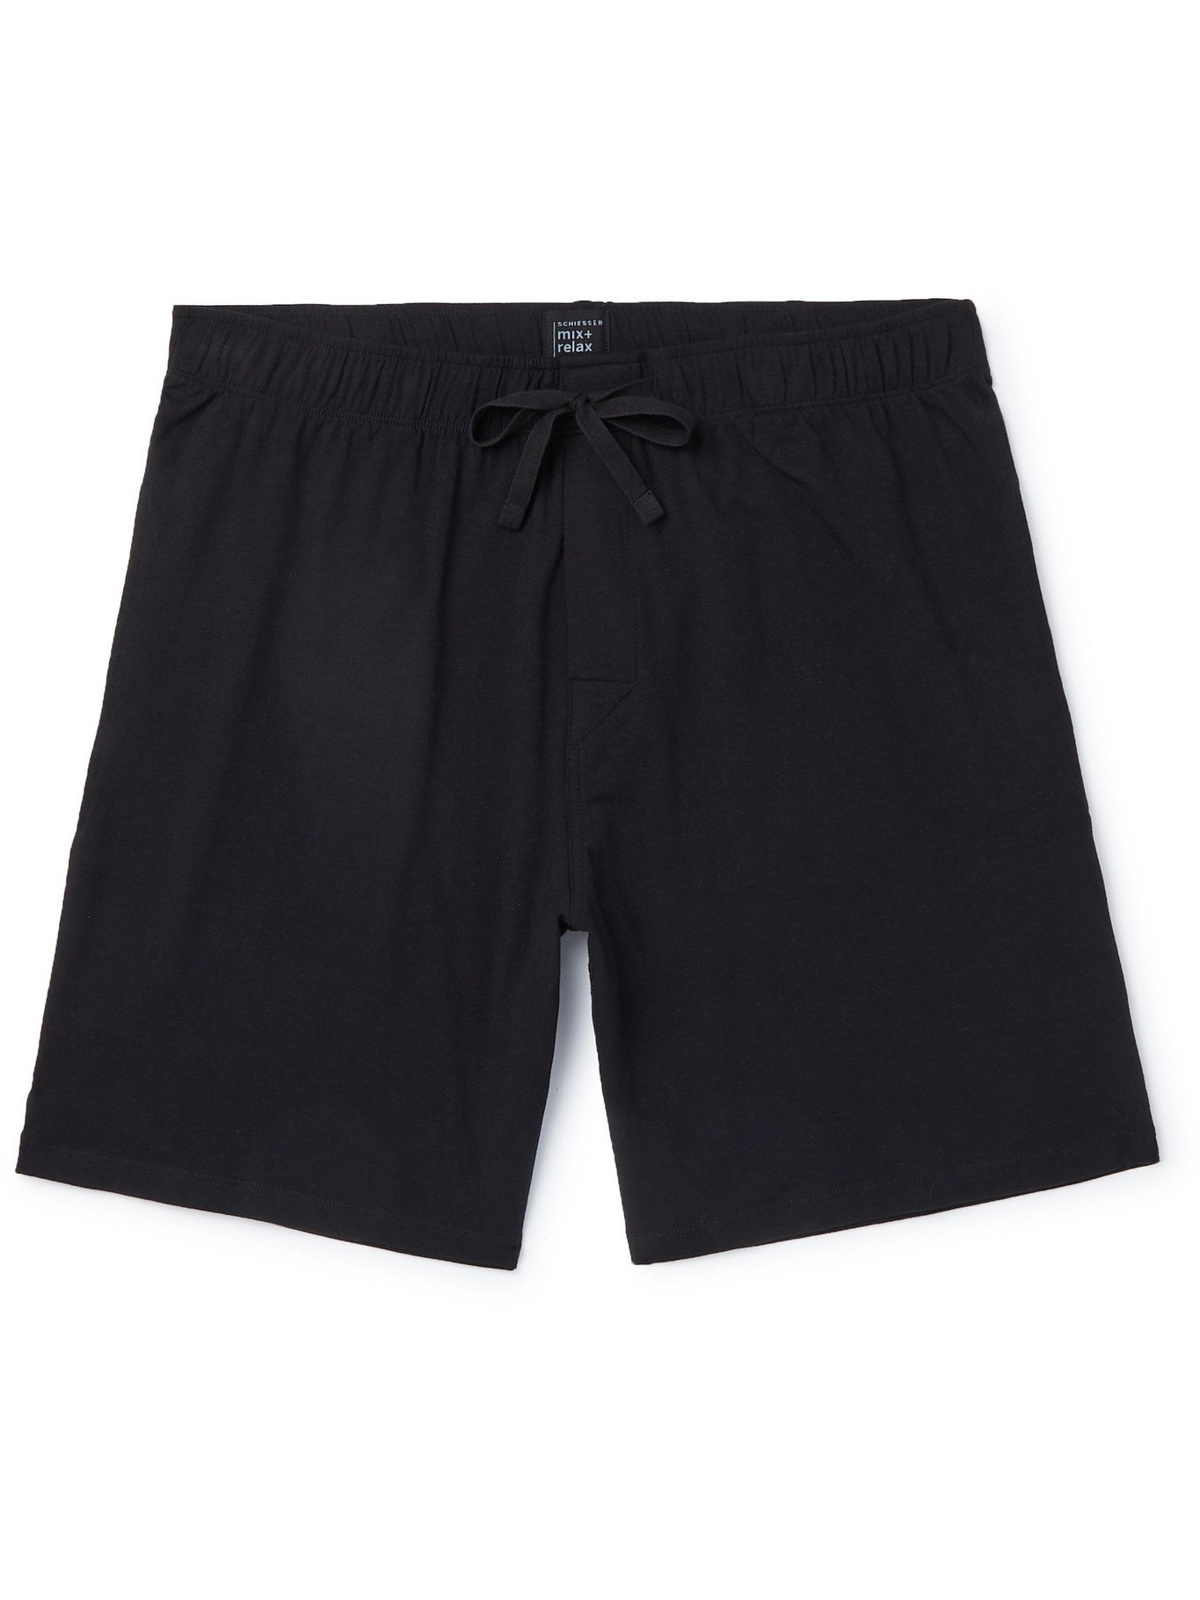 SCHIESSER - M - Black Cotton-Jersey - Pyjama Schiesser Shorts